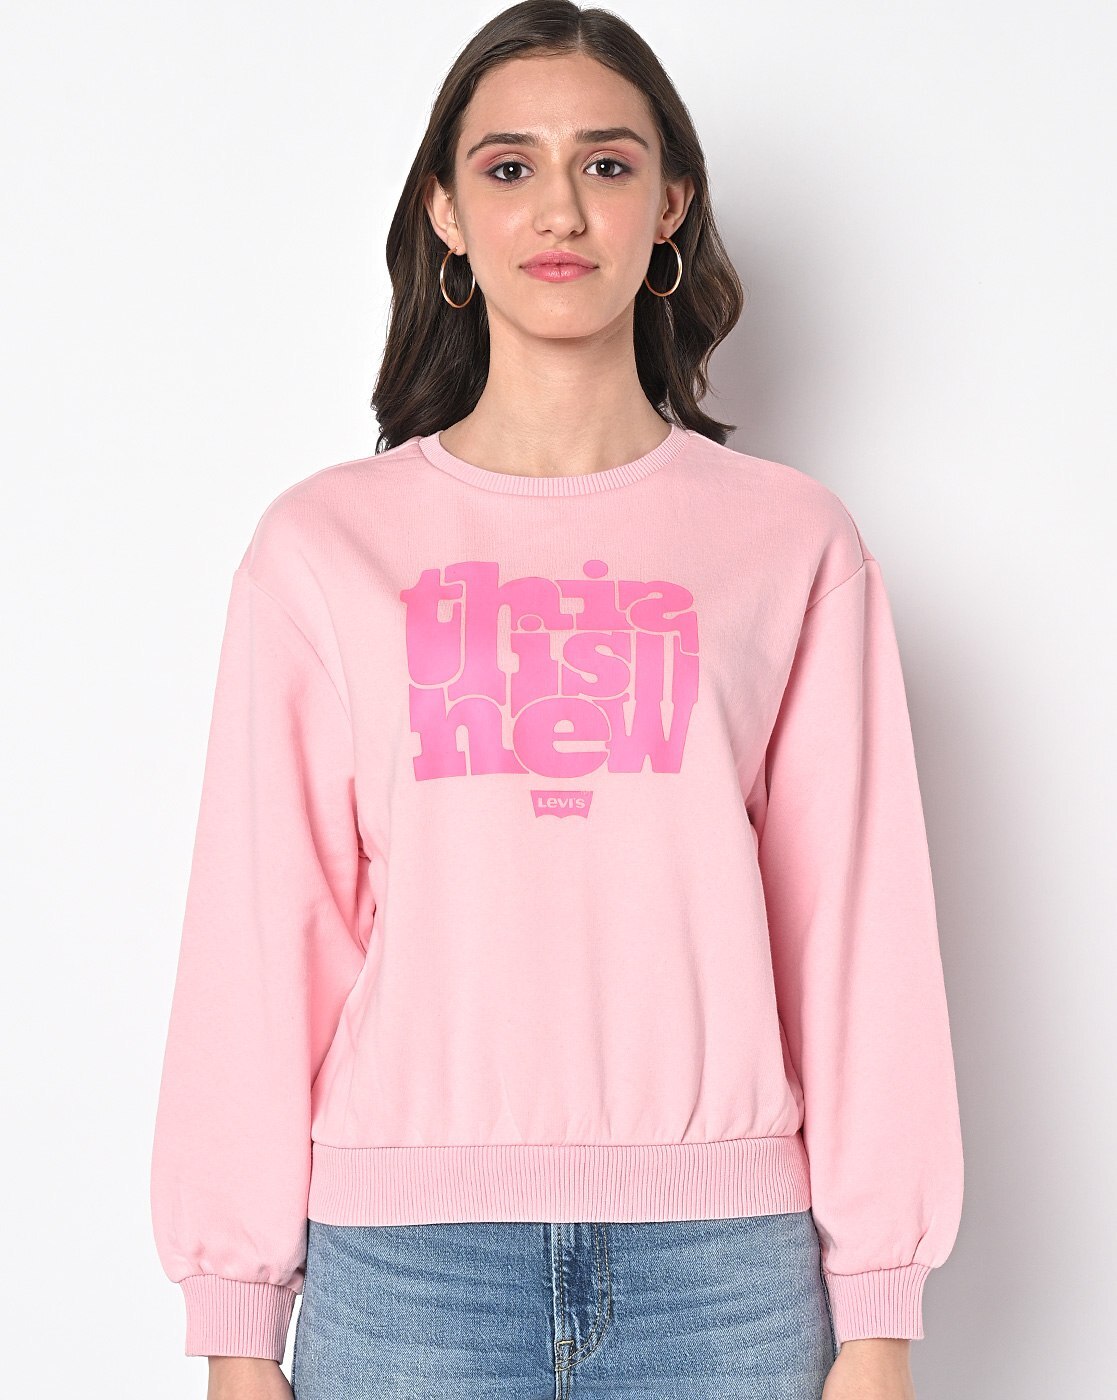 Buy Pink Sweatshirt & Hoodies for Women by LEVIS Online 